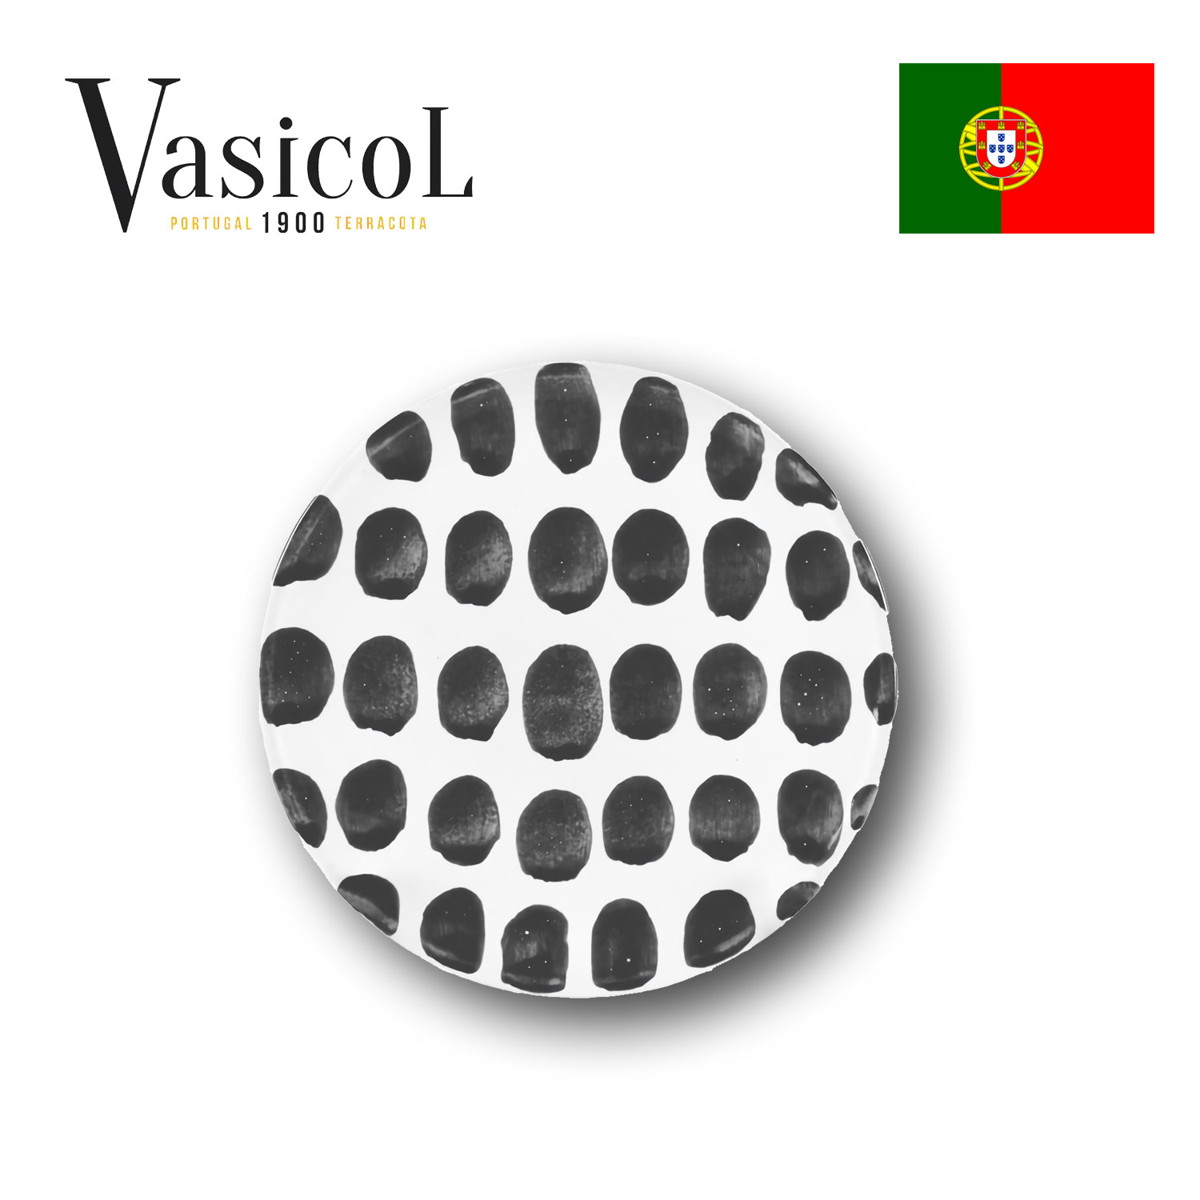 MARIA デザートプレート ラージドット 皿 食器 ポルトガル製 テラコッタ 陶器